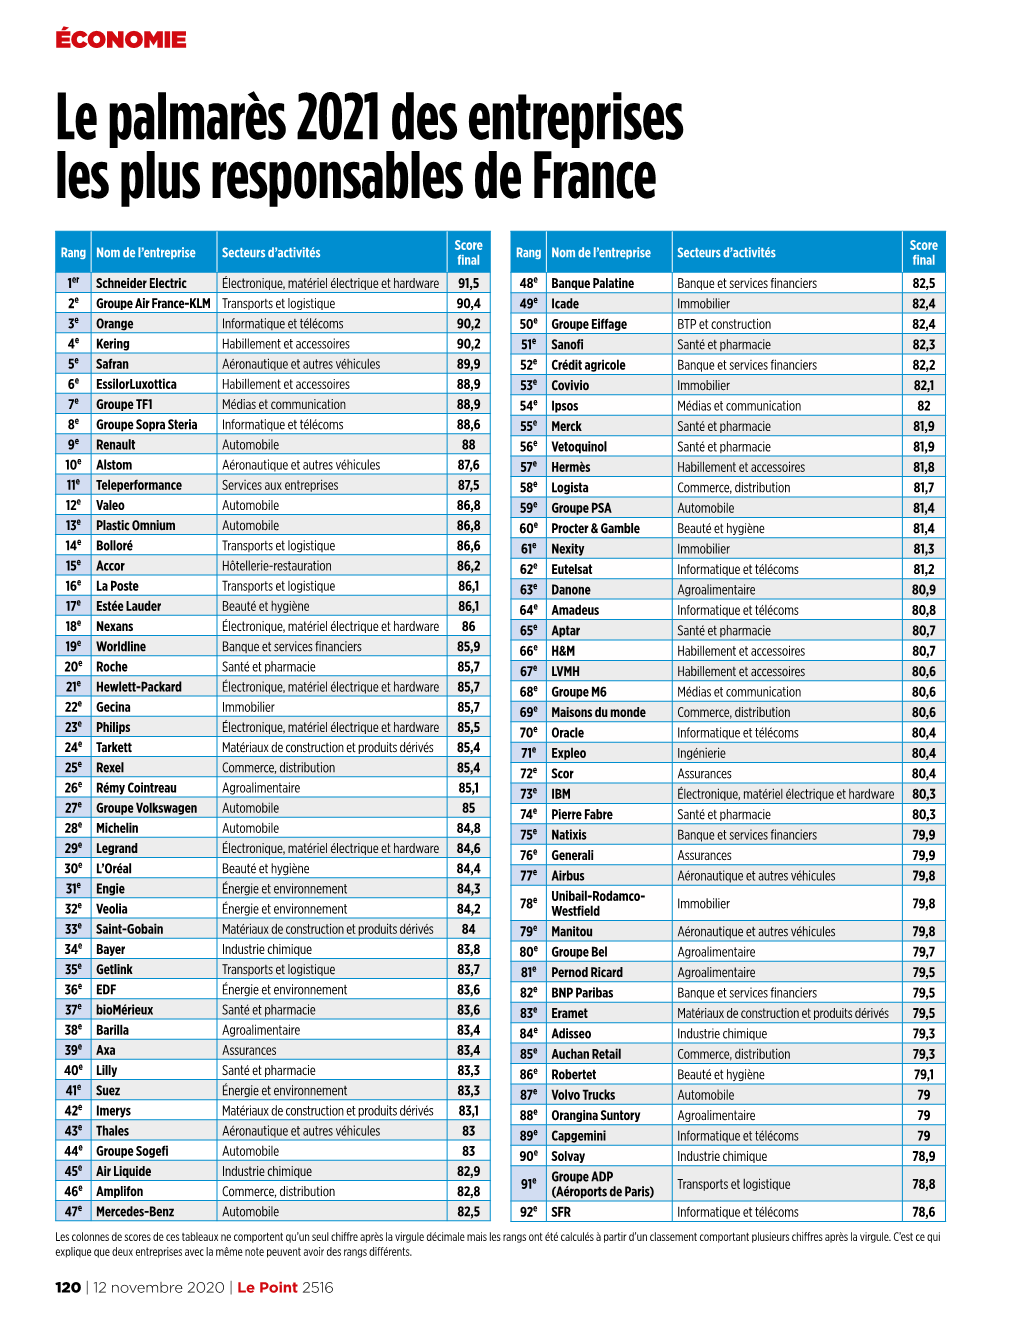 Le Palmarès 2021 Des Entreprises Les Plus Responsables De France